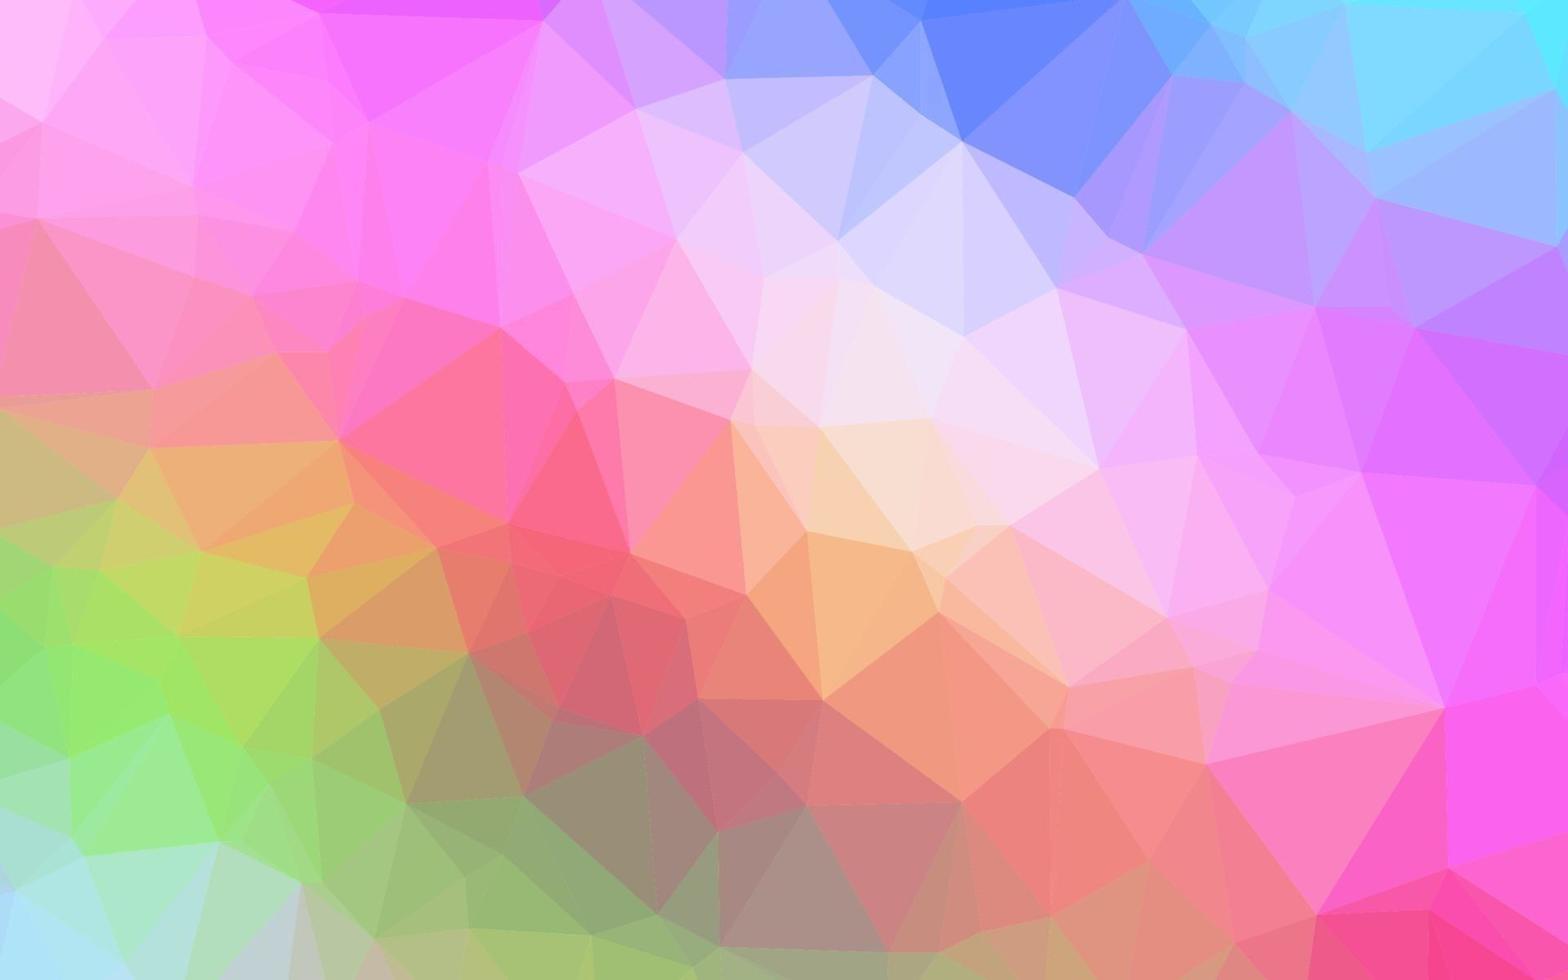 Licht mehrfarbig, Regenbogen-Vektor-Polygon-Zusammenfassungshintergrund. vektor